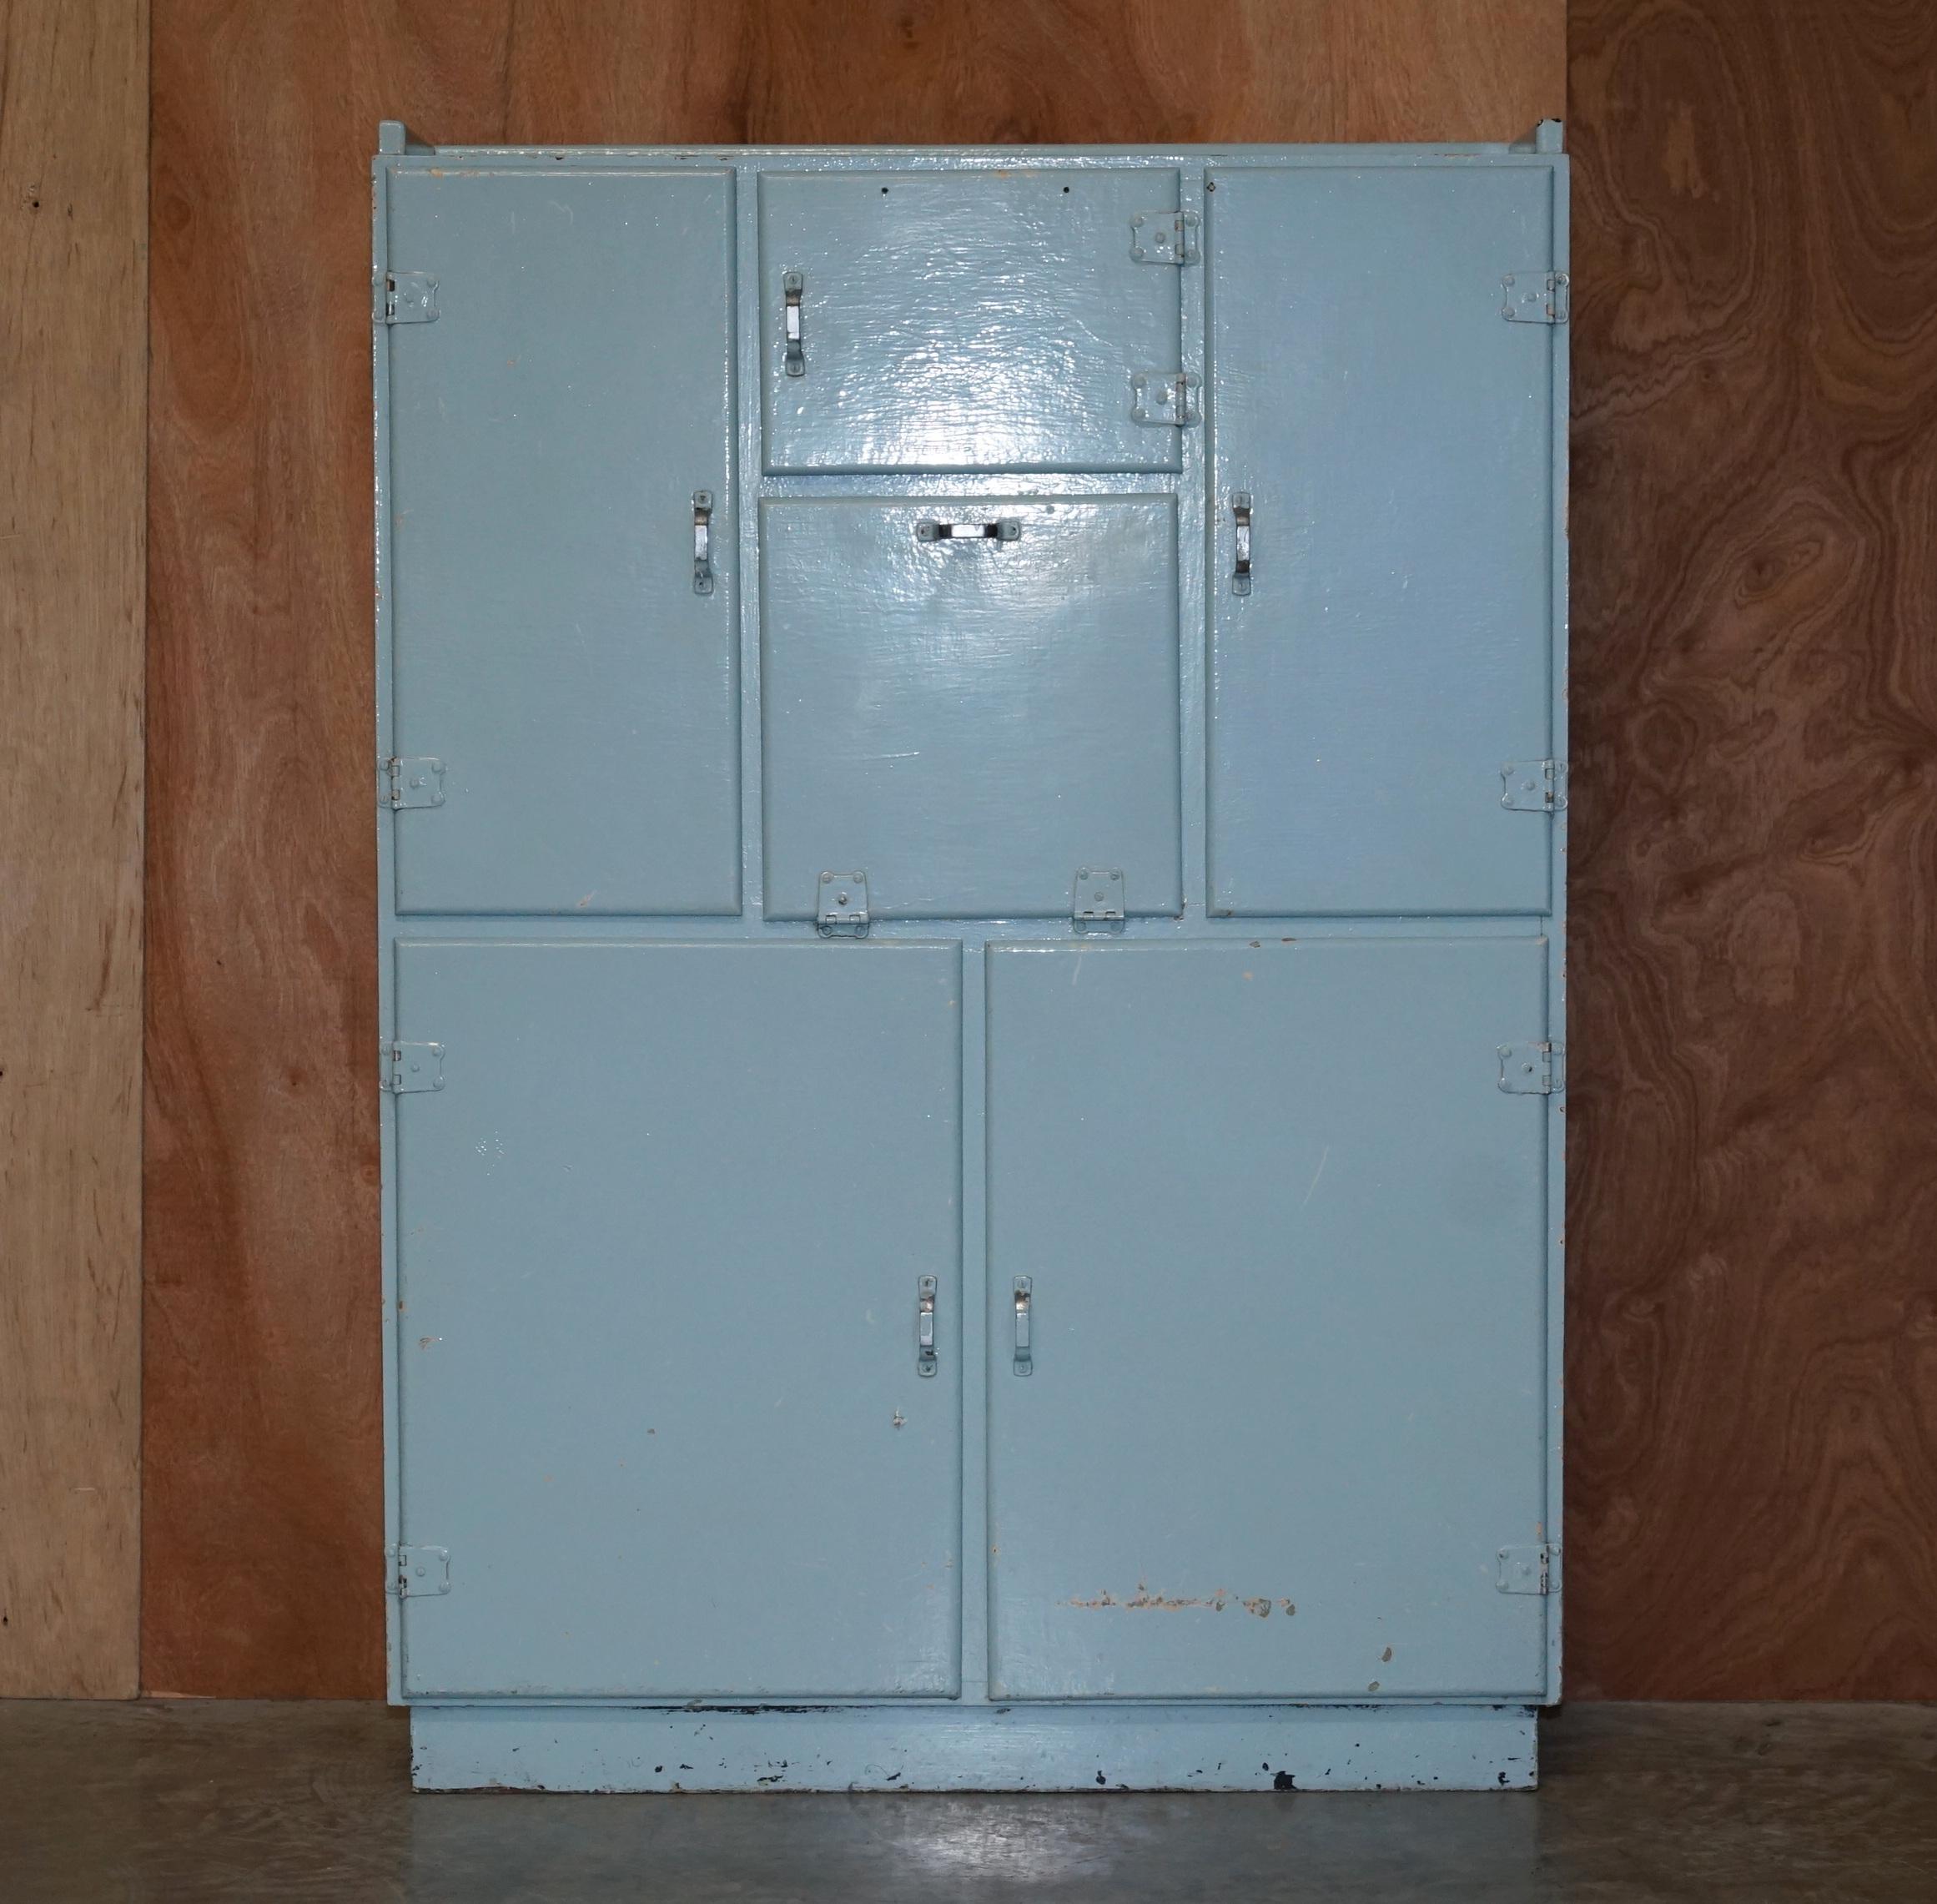 Nous sommes ravis de vous proposer cette armoire de cuisine rétro des années 1950 de couleur bleu œuf de canard.

Il s'agit d'une pièce décorative de bonne facture, avec un cadre en bois massif, dont certaines sections sont doublées de zinc pour